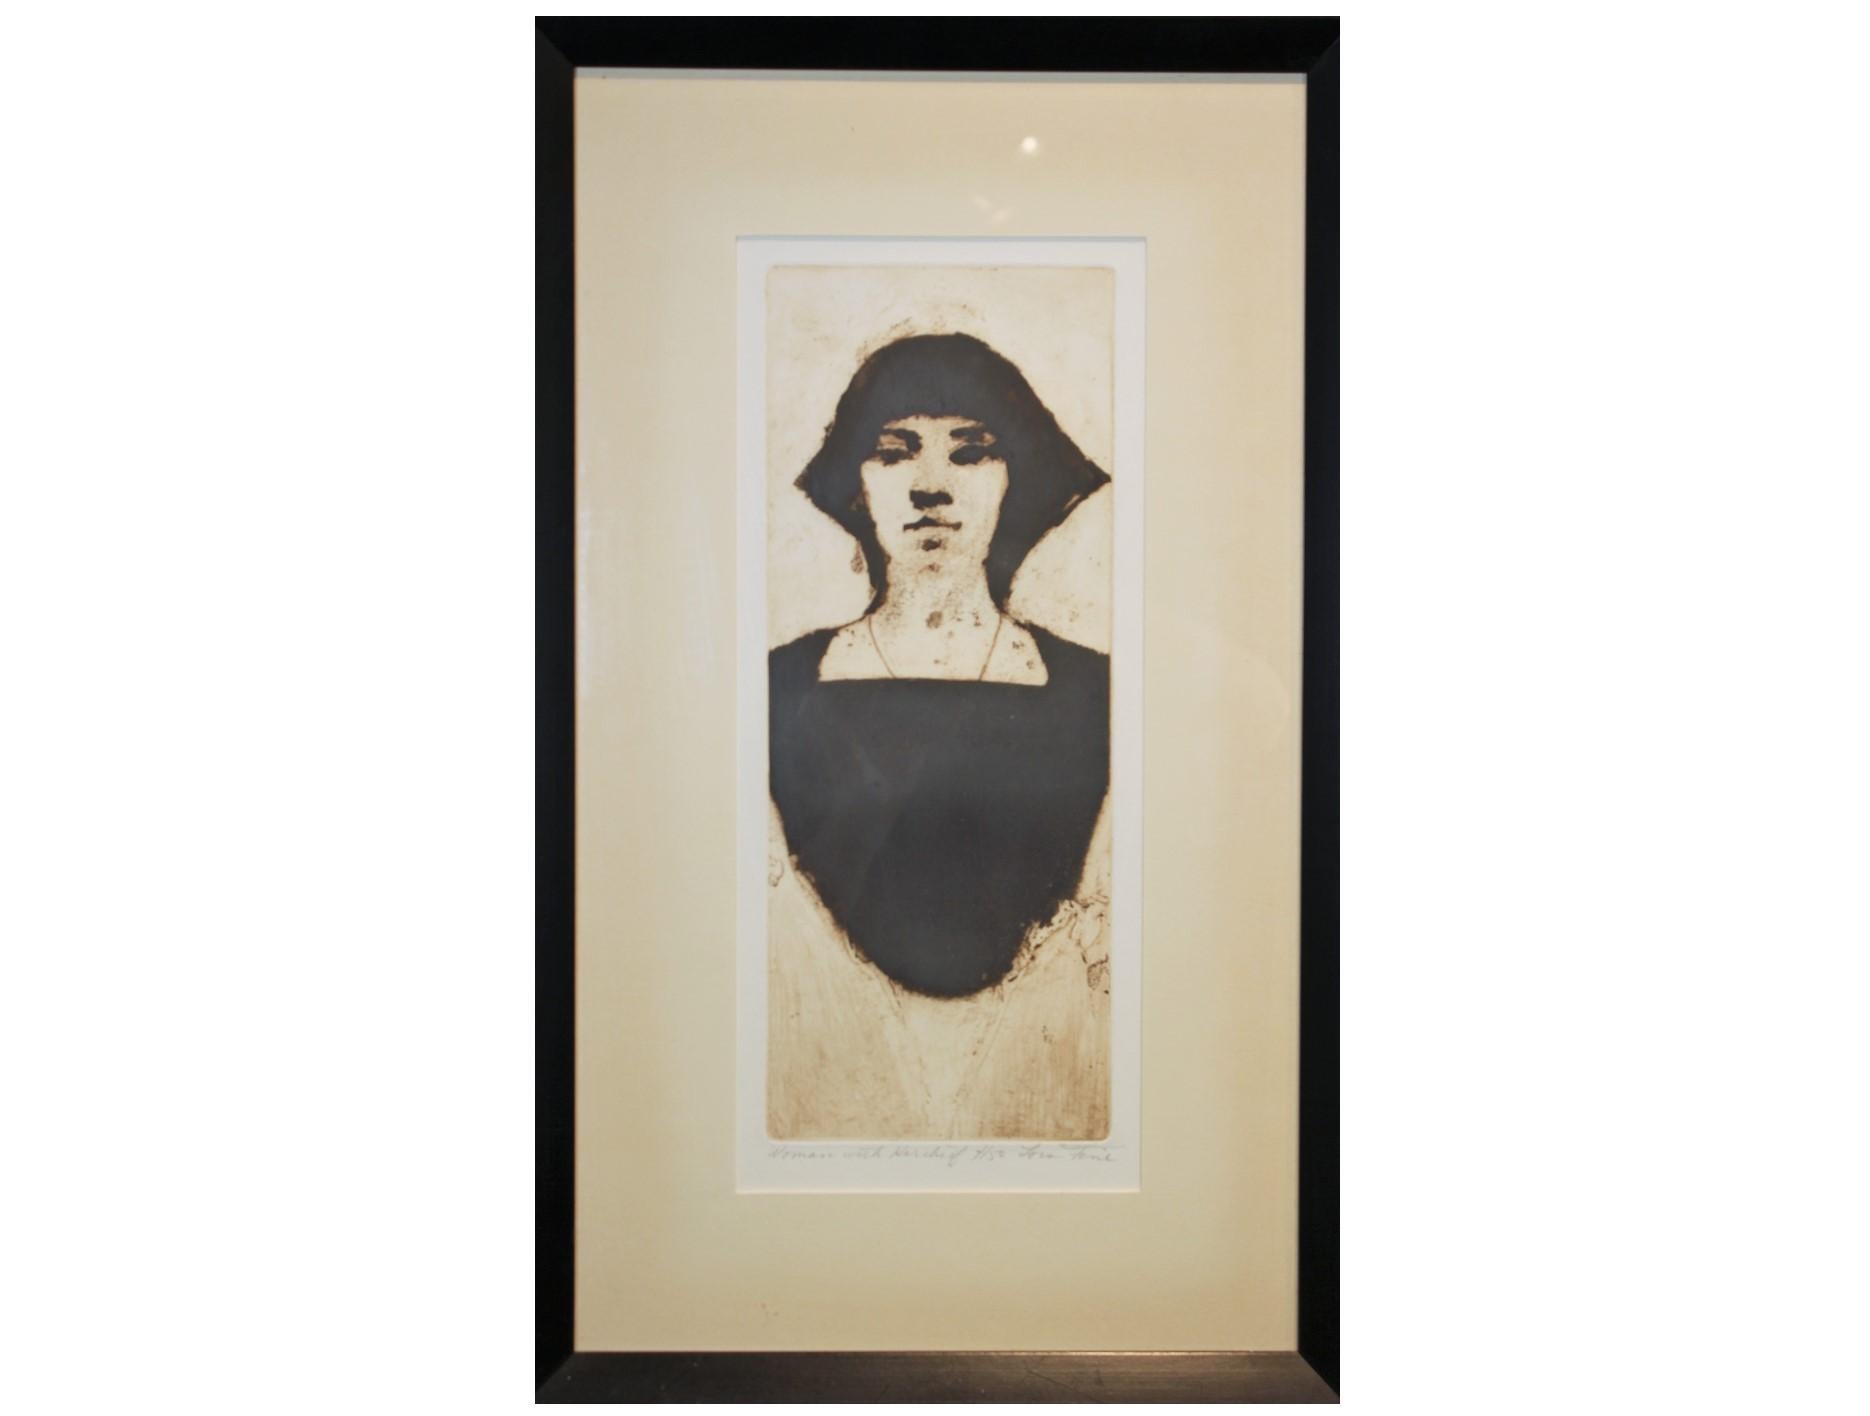 Lois Fine Portrait Print – ""Woman with Kerchief"" Schwarz-weißes Porträt, Auflage 4 von 50